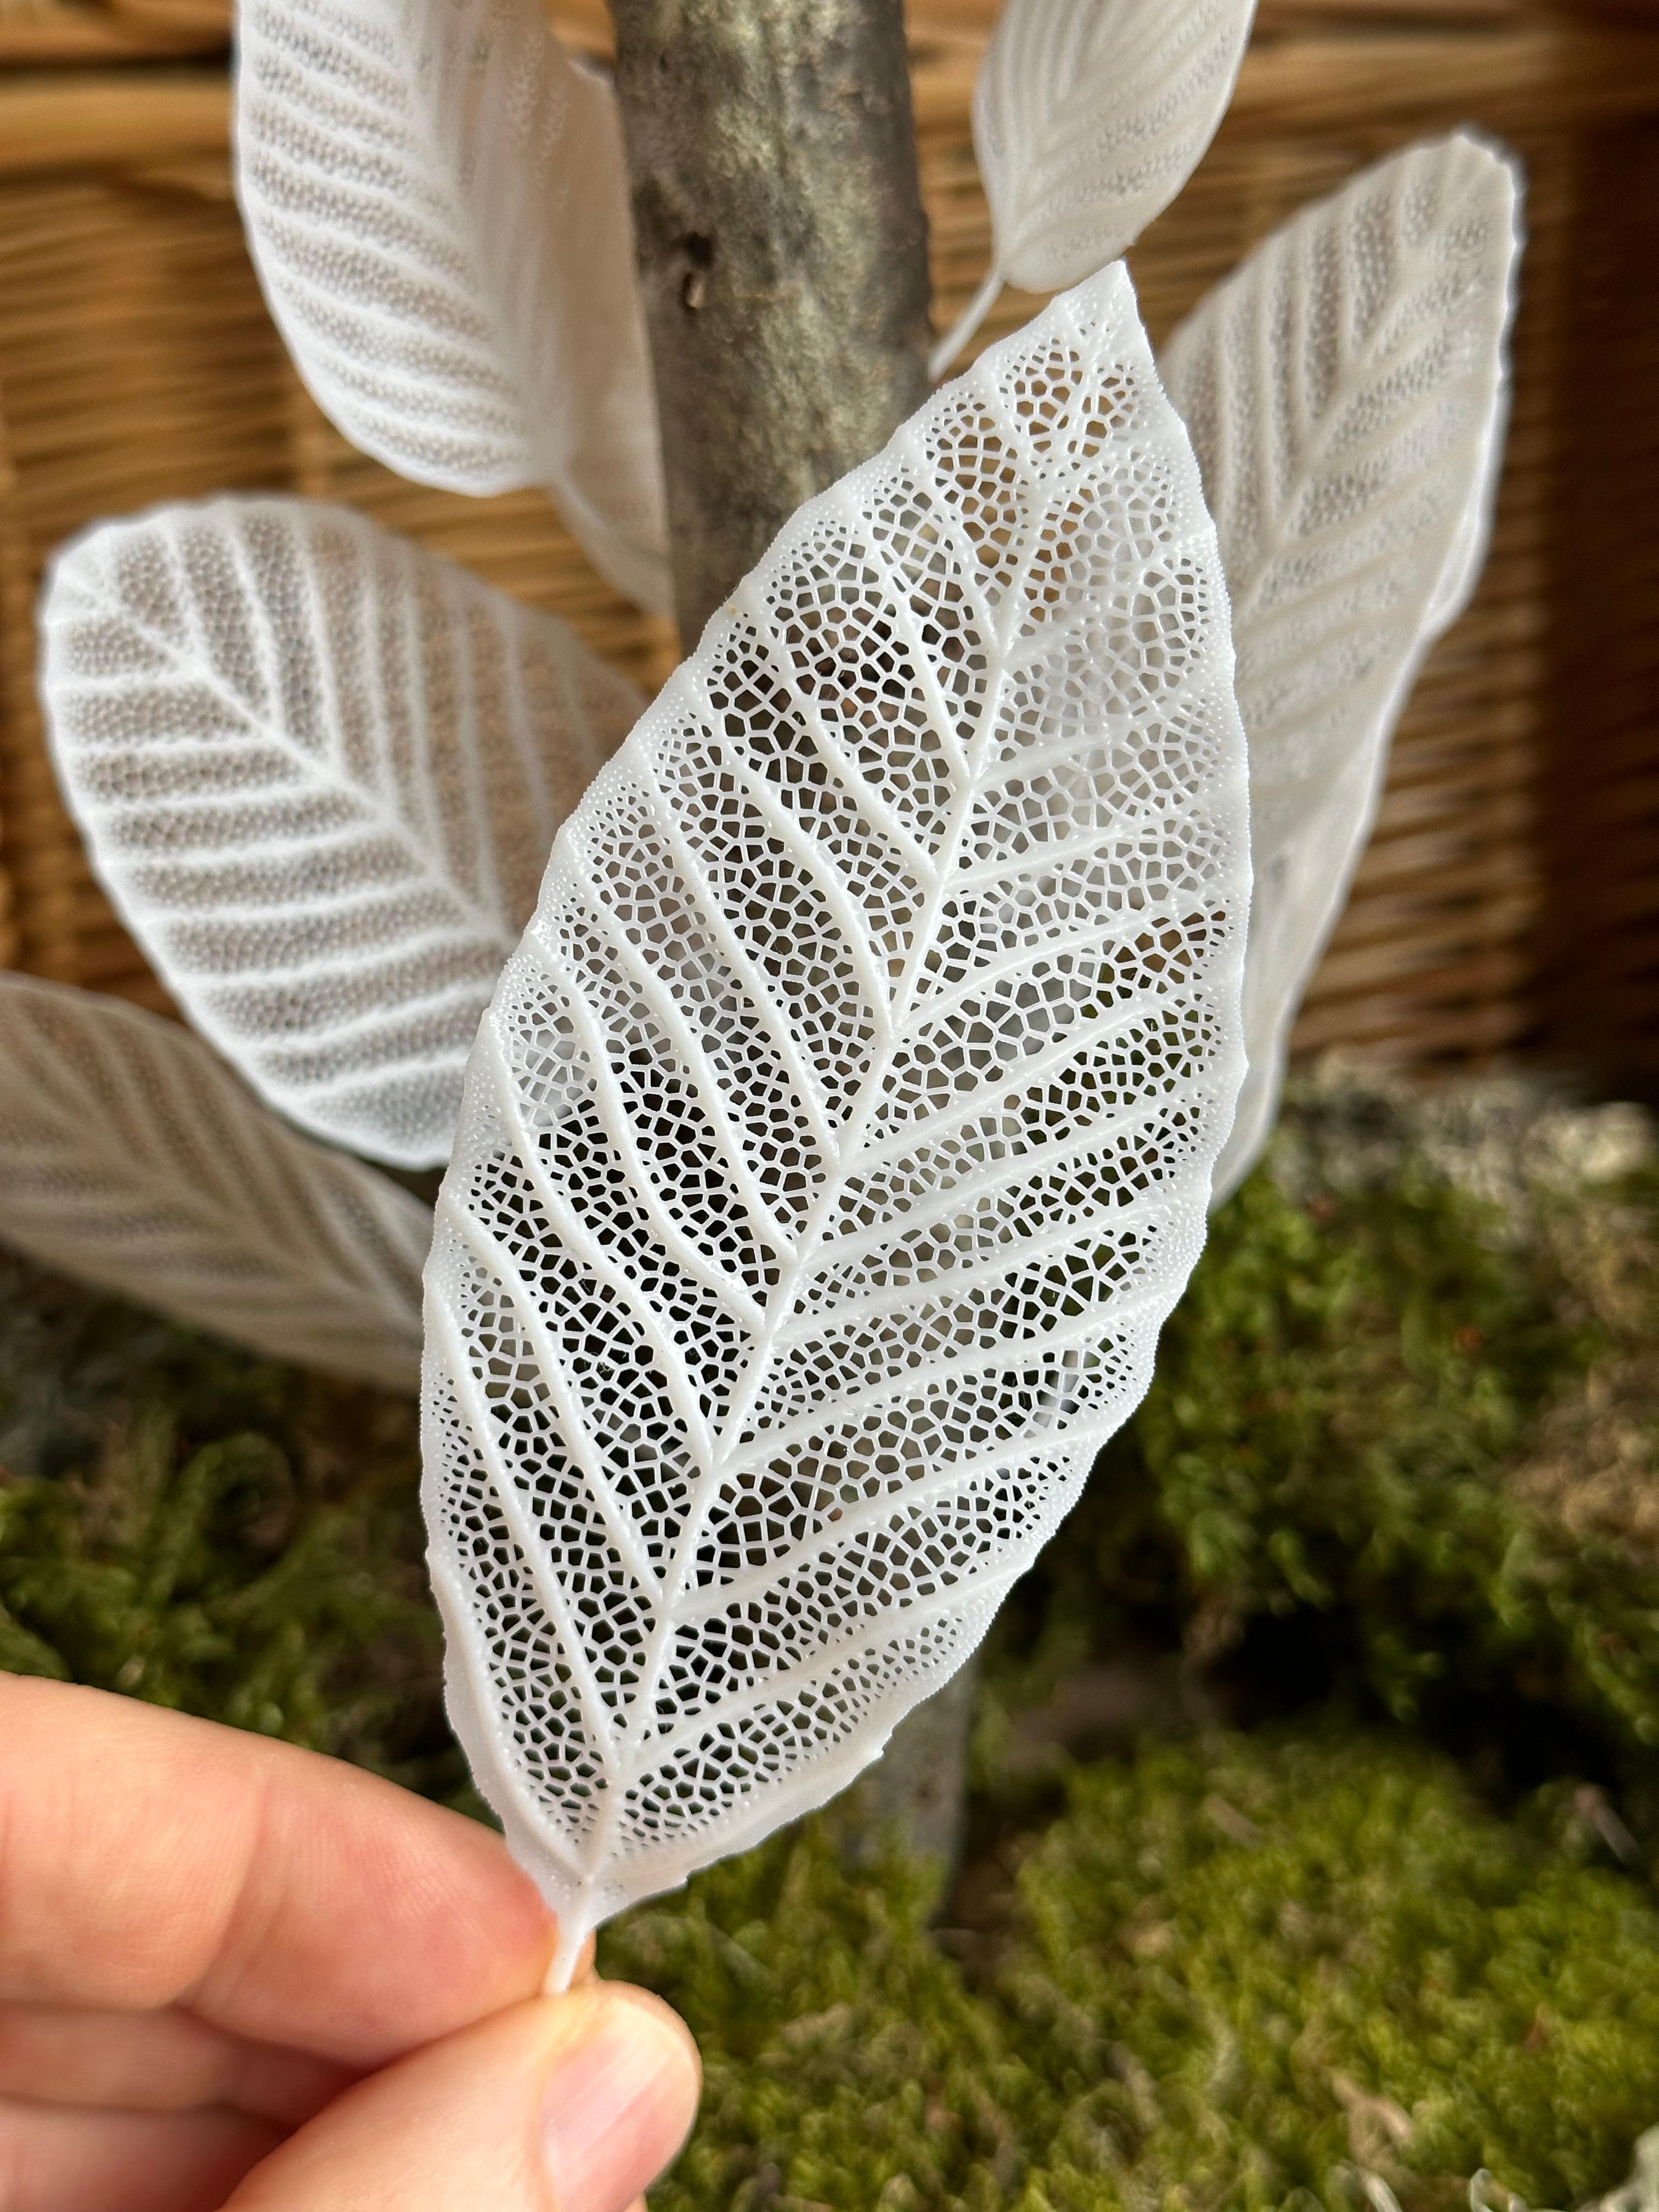 Skeleton Leaves - Willow 3d model